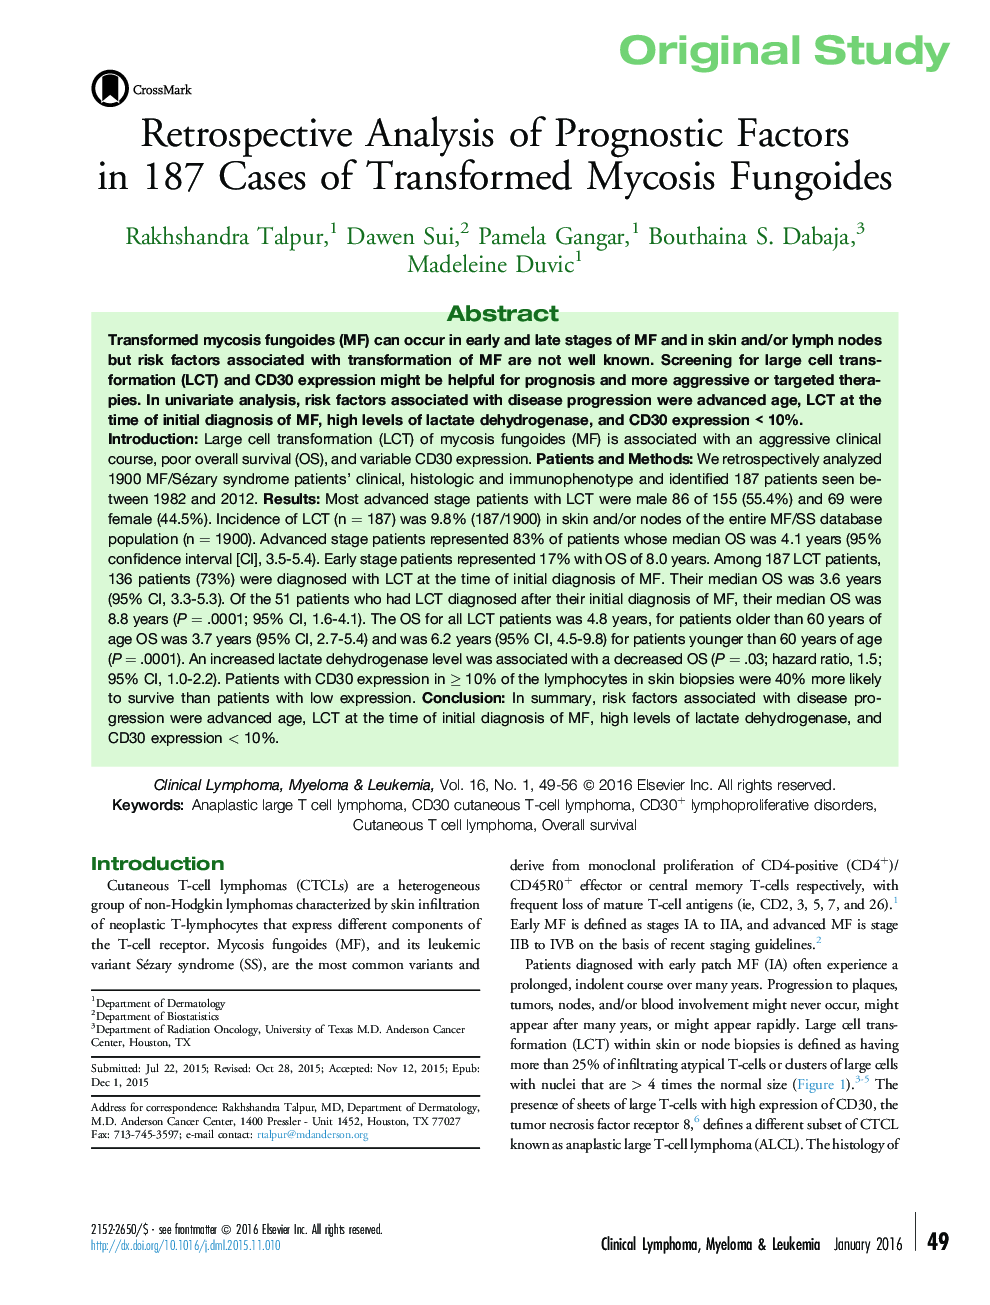 تحقیق ابتدایی تحلیل عاملی از عوامل پیشگویی کننده در 188 مورد در مورد فونگویید های میکوز ترانسفورمر 